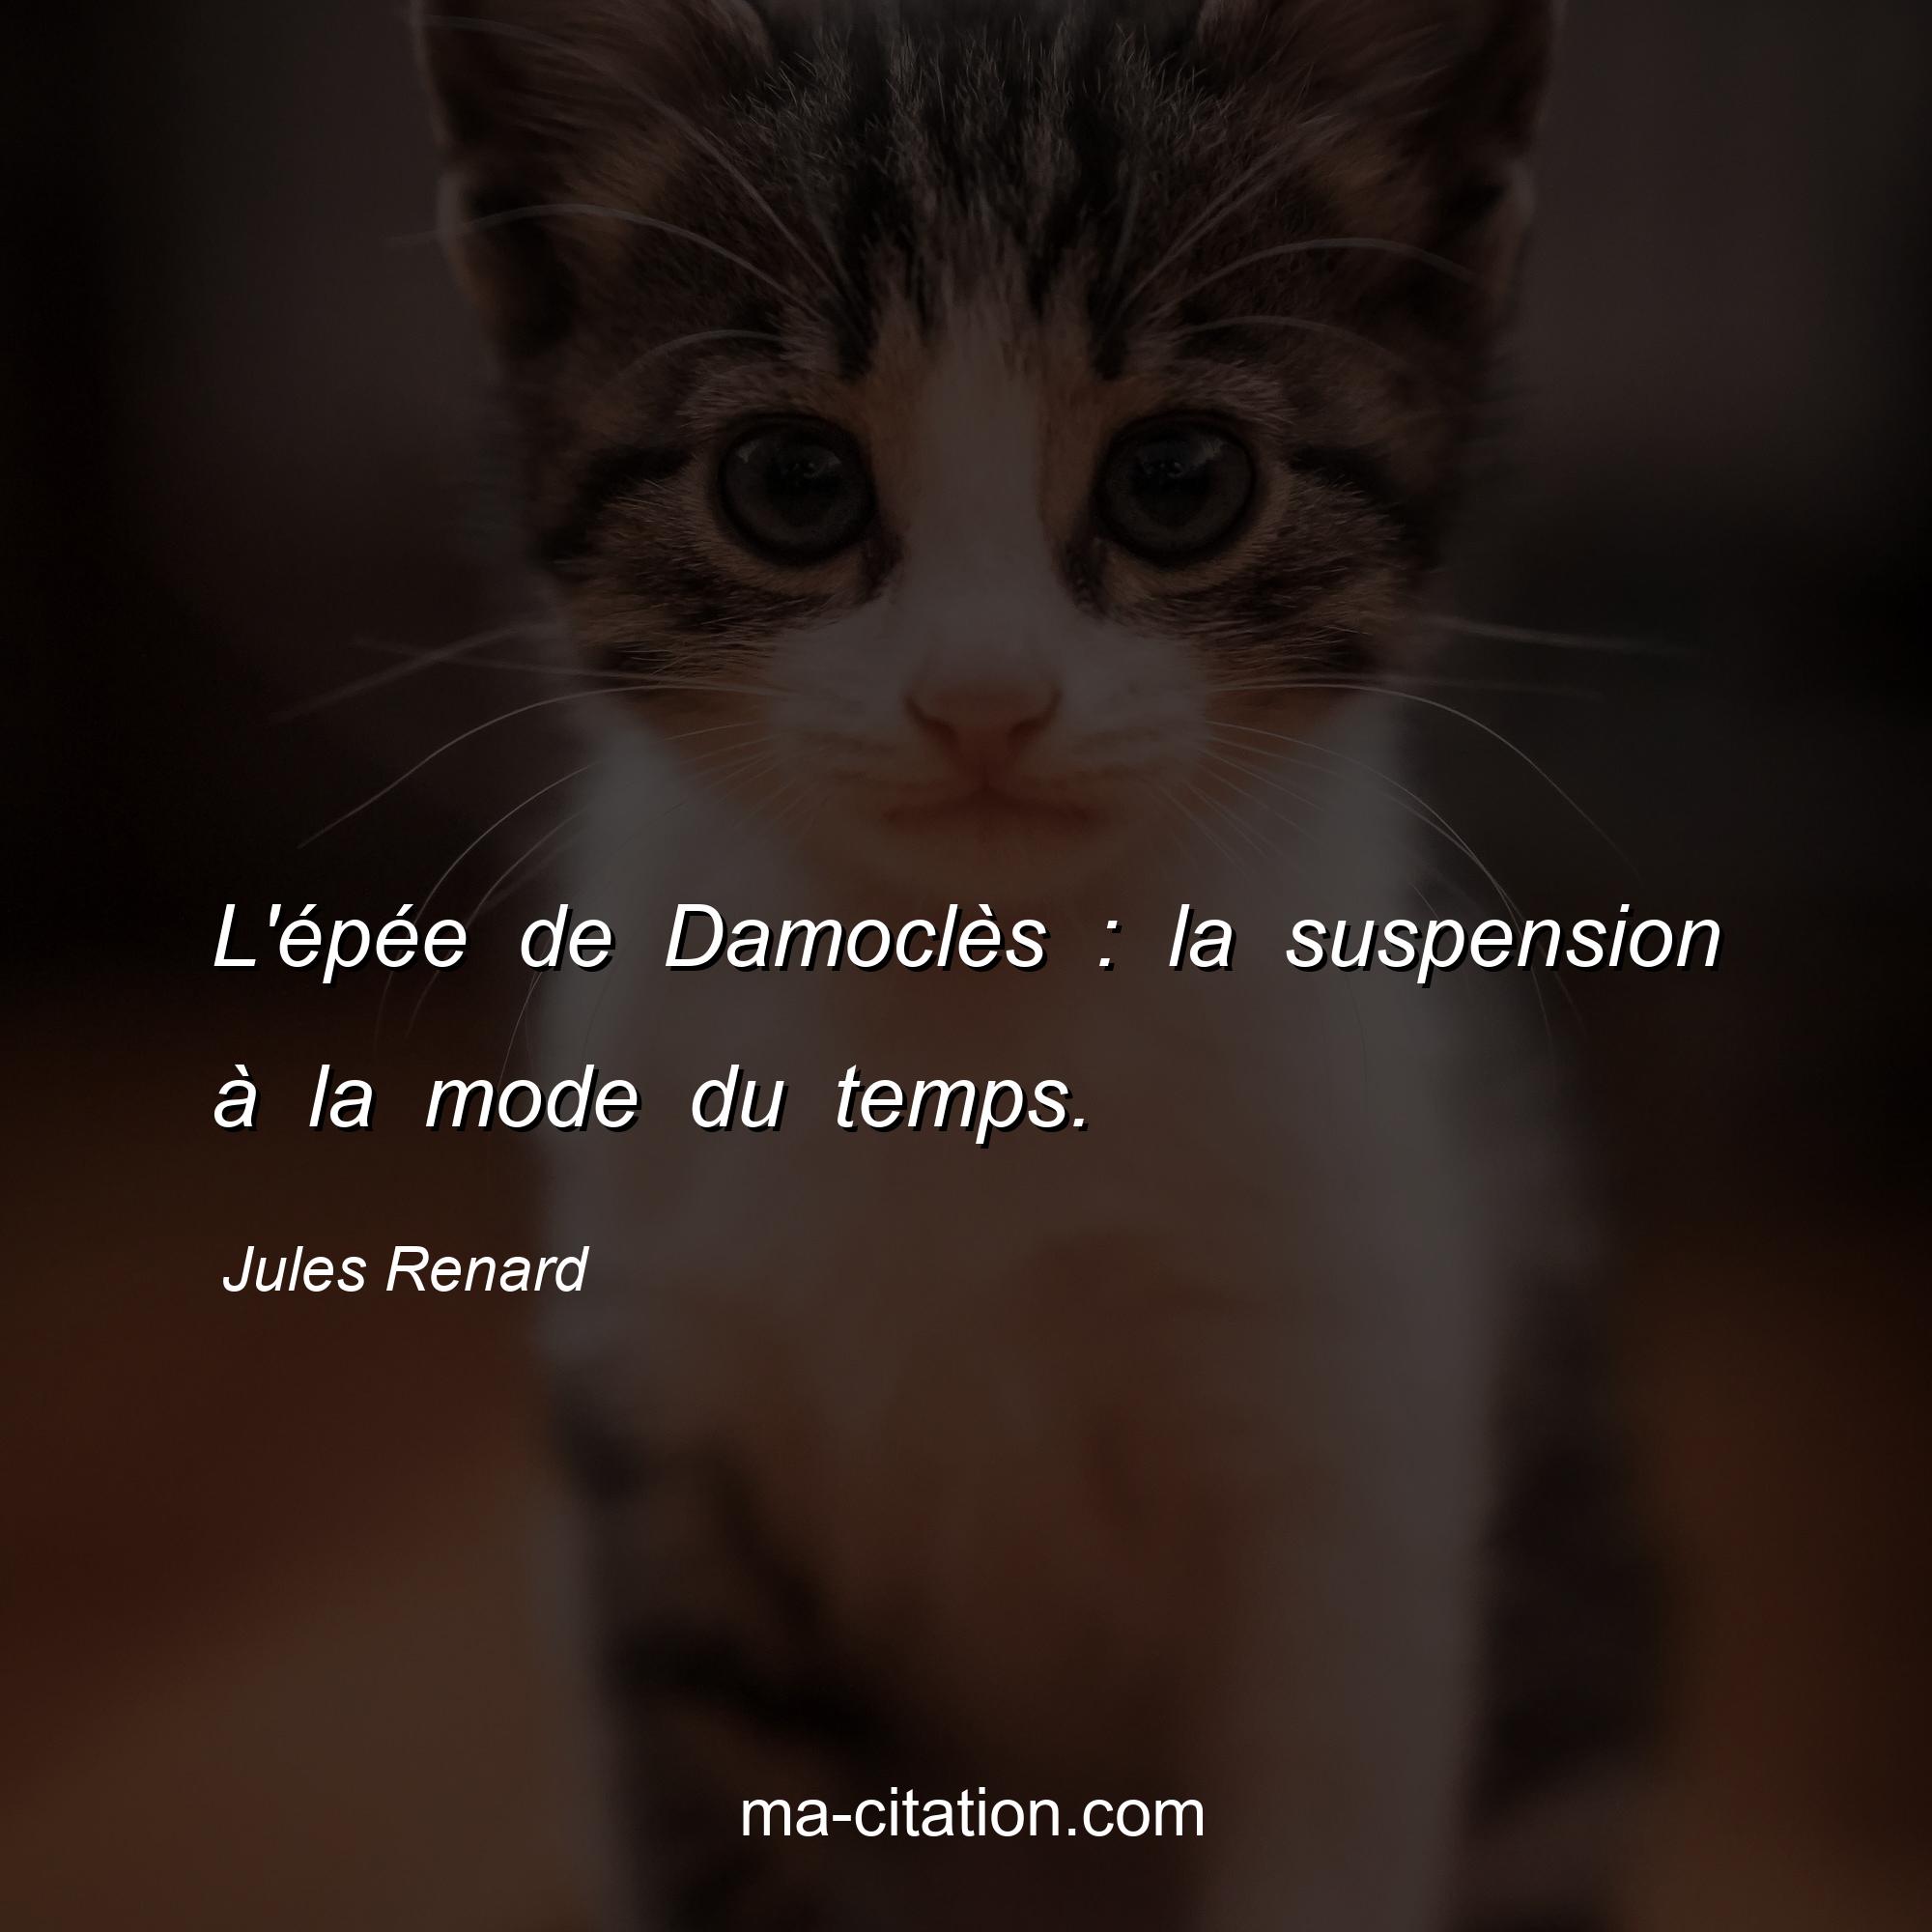 Jules Renard : L'épée de Damoclès : la suspension à la mode du temps.